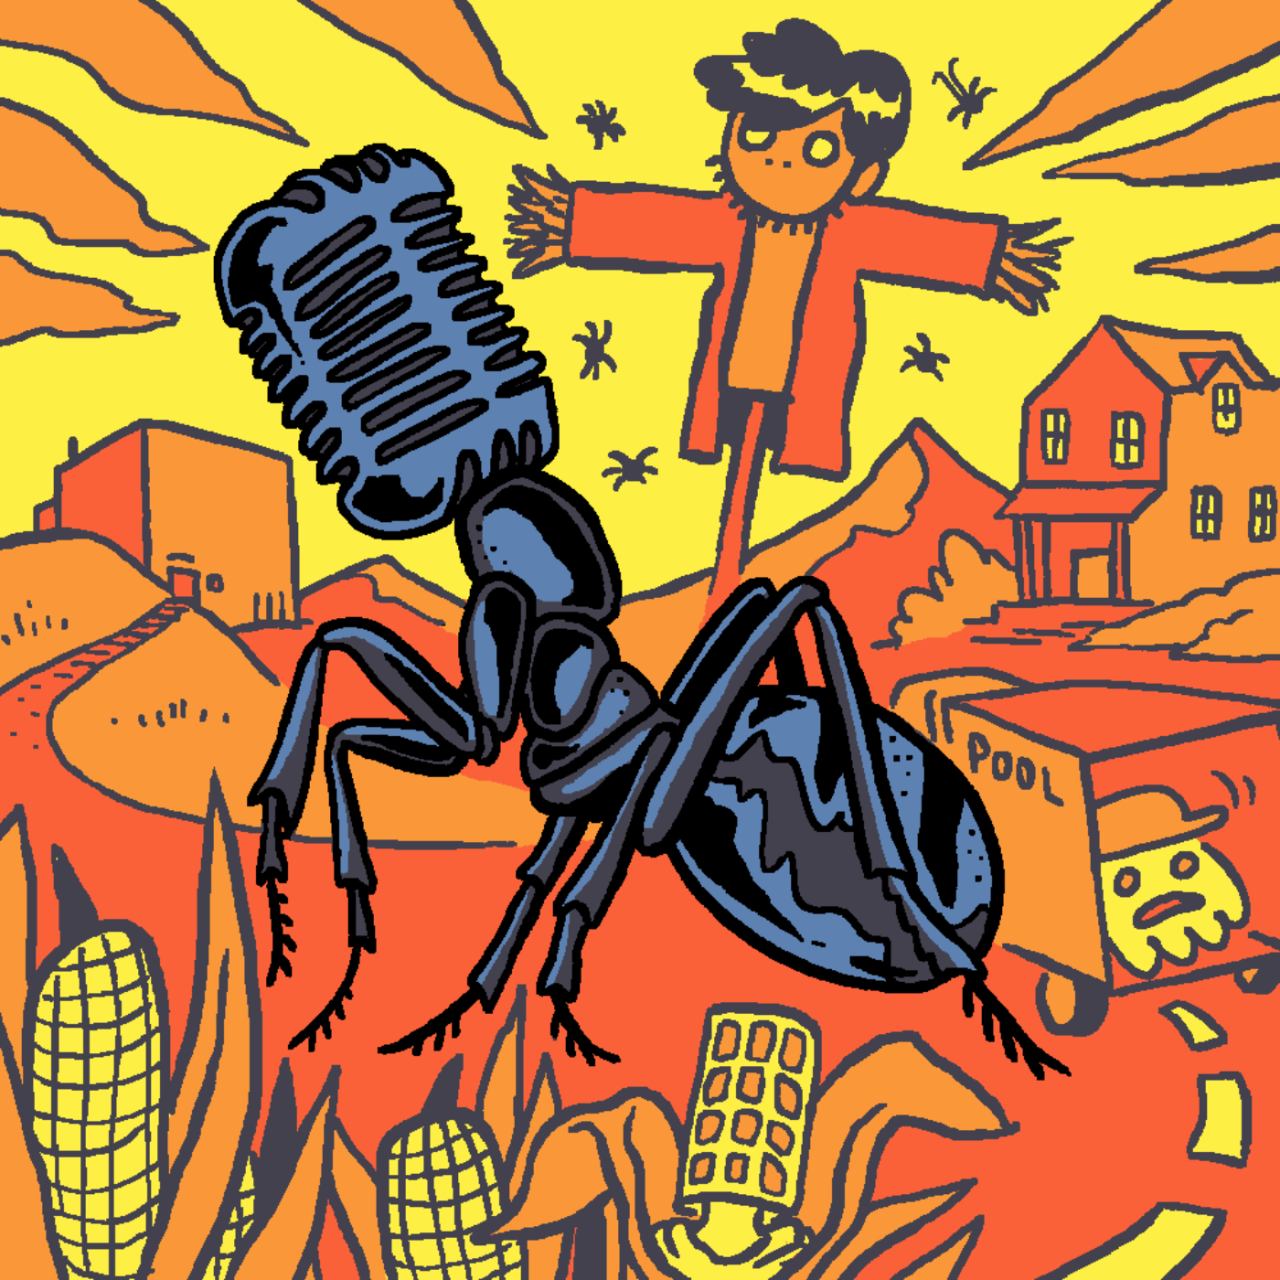 Eine selbst gezeichnete Version des Original-Covers von Folge 32 "Der Ameisenmensch". Eine große schwarze Ameise macht eine Farm unsicher. Marcus versteckt sich in einem Maiskolben, Tim wird von einem LKW abtransportiert und Jeff bildet eine Vogelscheuche.